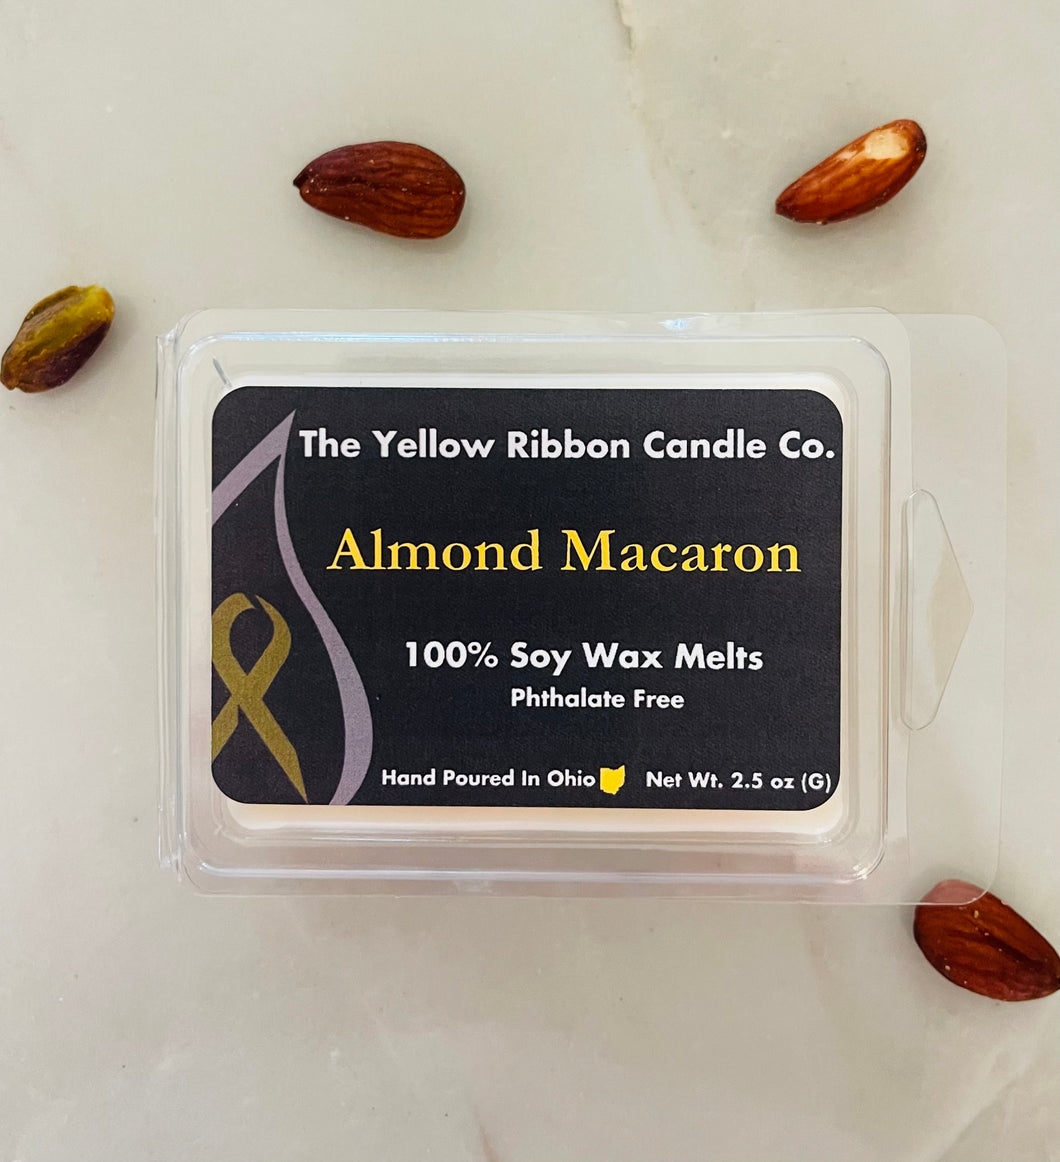 Almond Macaron 100% Soy Wax Melts